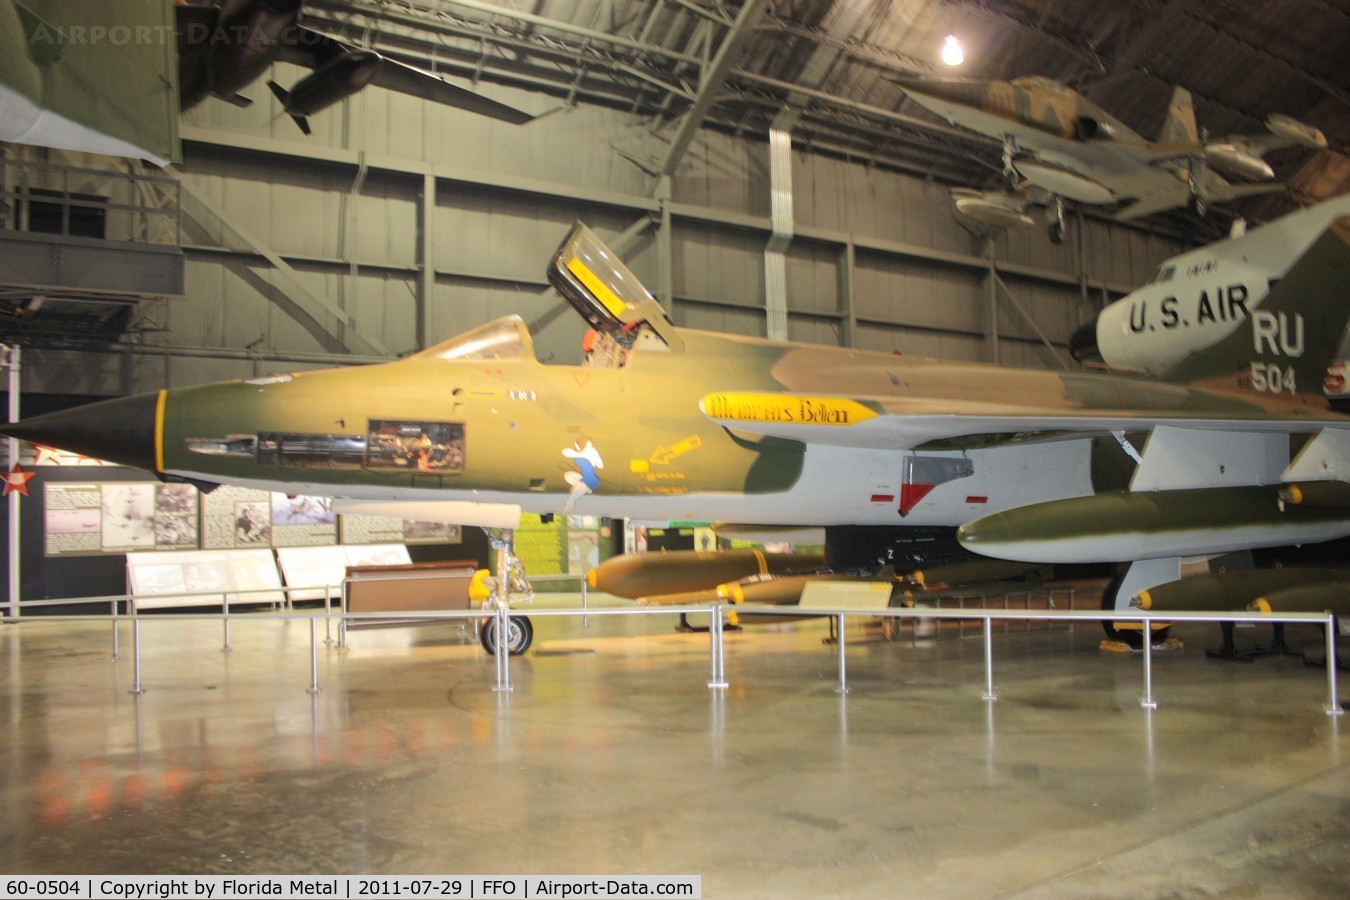 60-0504, 1961 Republic F-105D Thunderchief C/N D192, F-105D